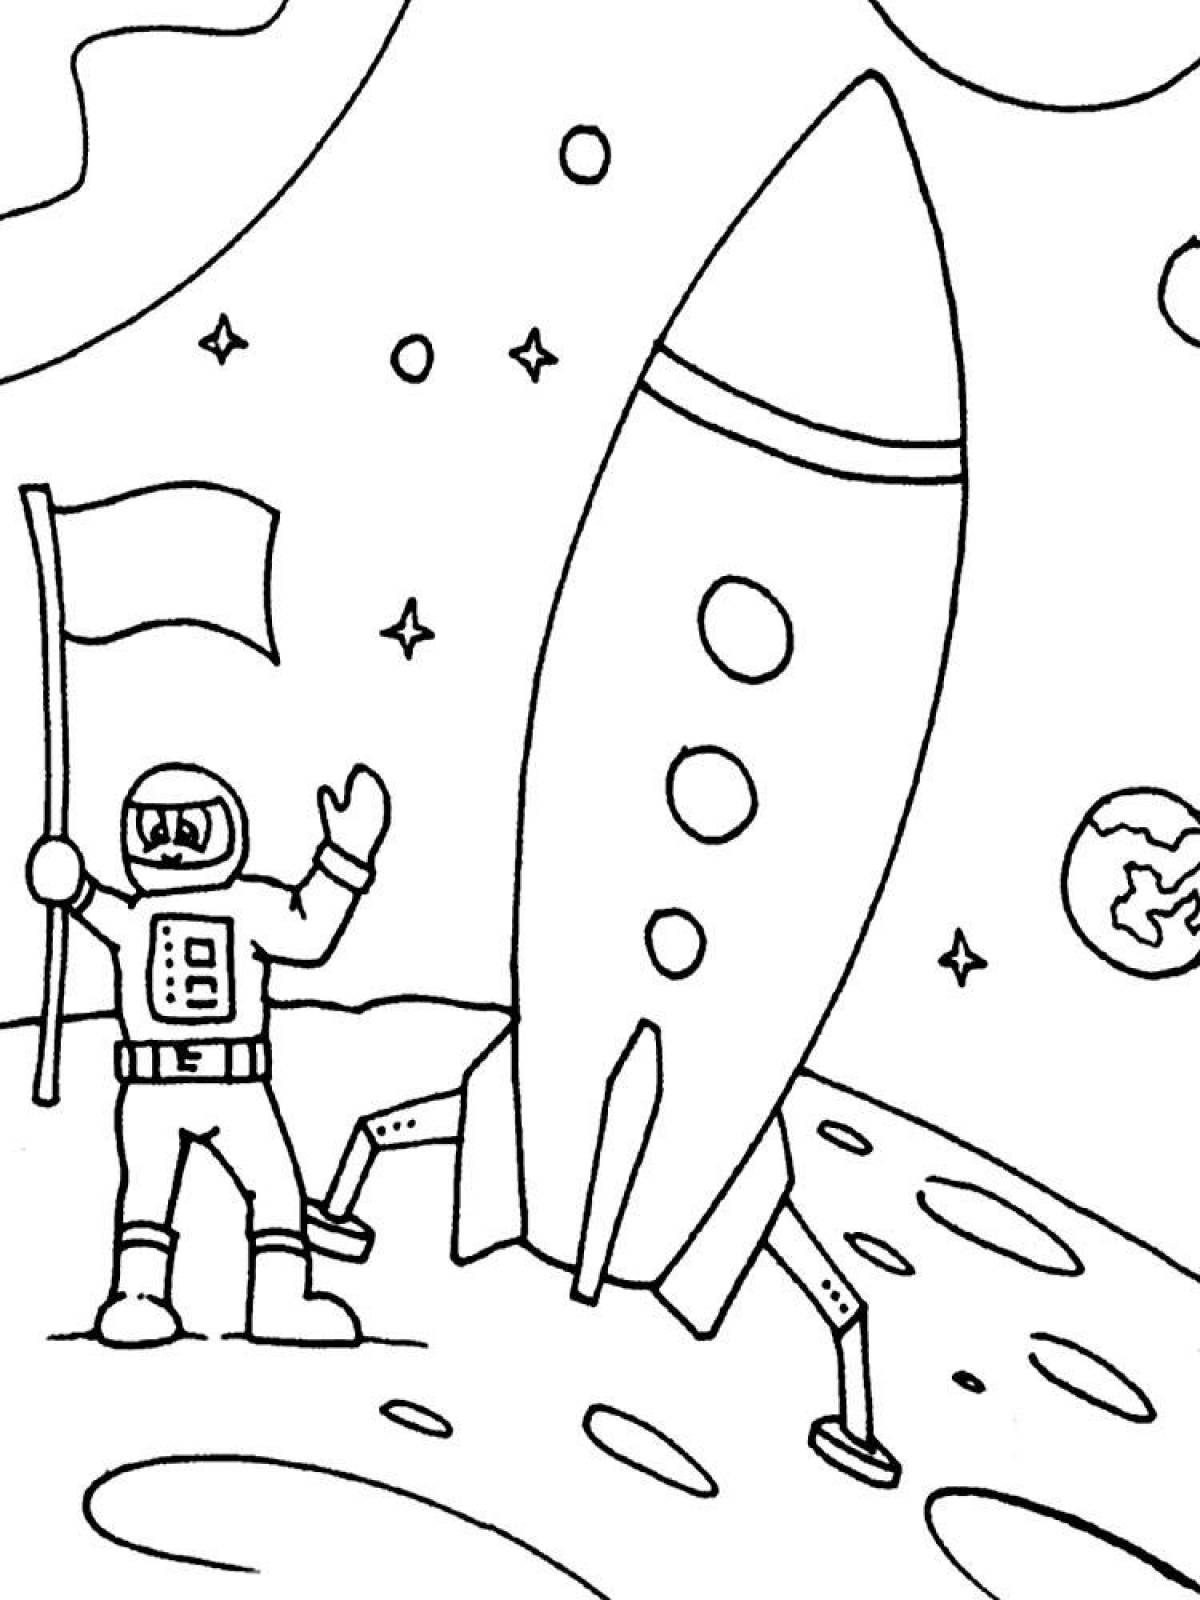 Детские раскраски ко дню космонавтики. Раскраска. В космосе. Рисунок ко Дню космонавтики. Рисунок ко Дню космонавтики раскраска. Раскраска день космонавтики для детей.